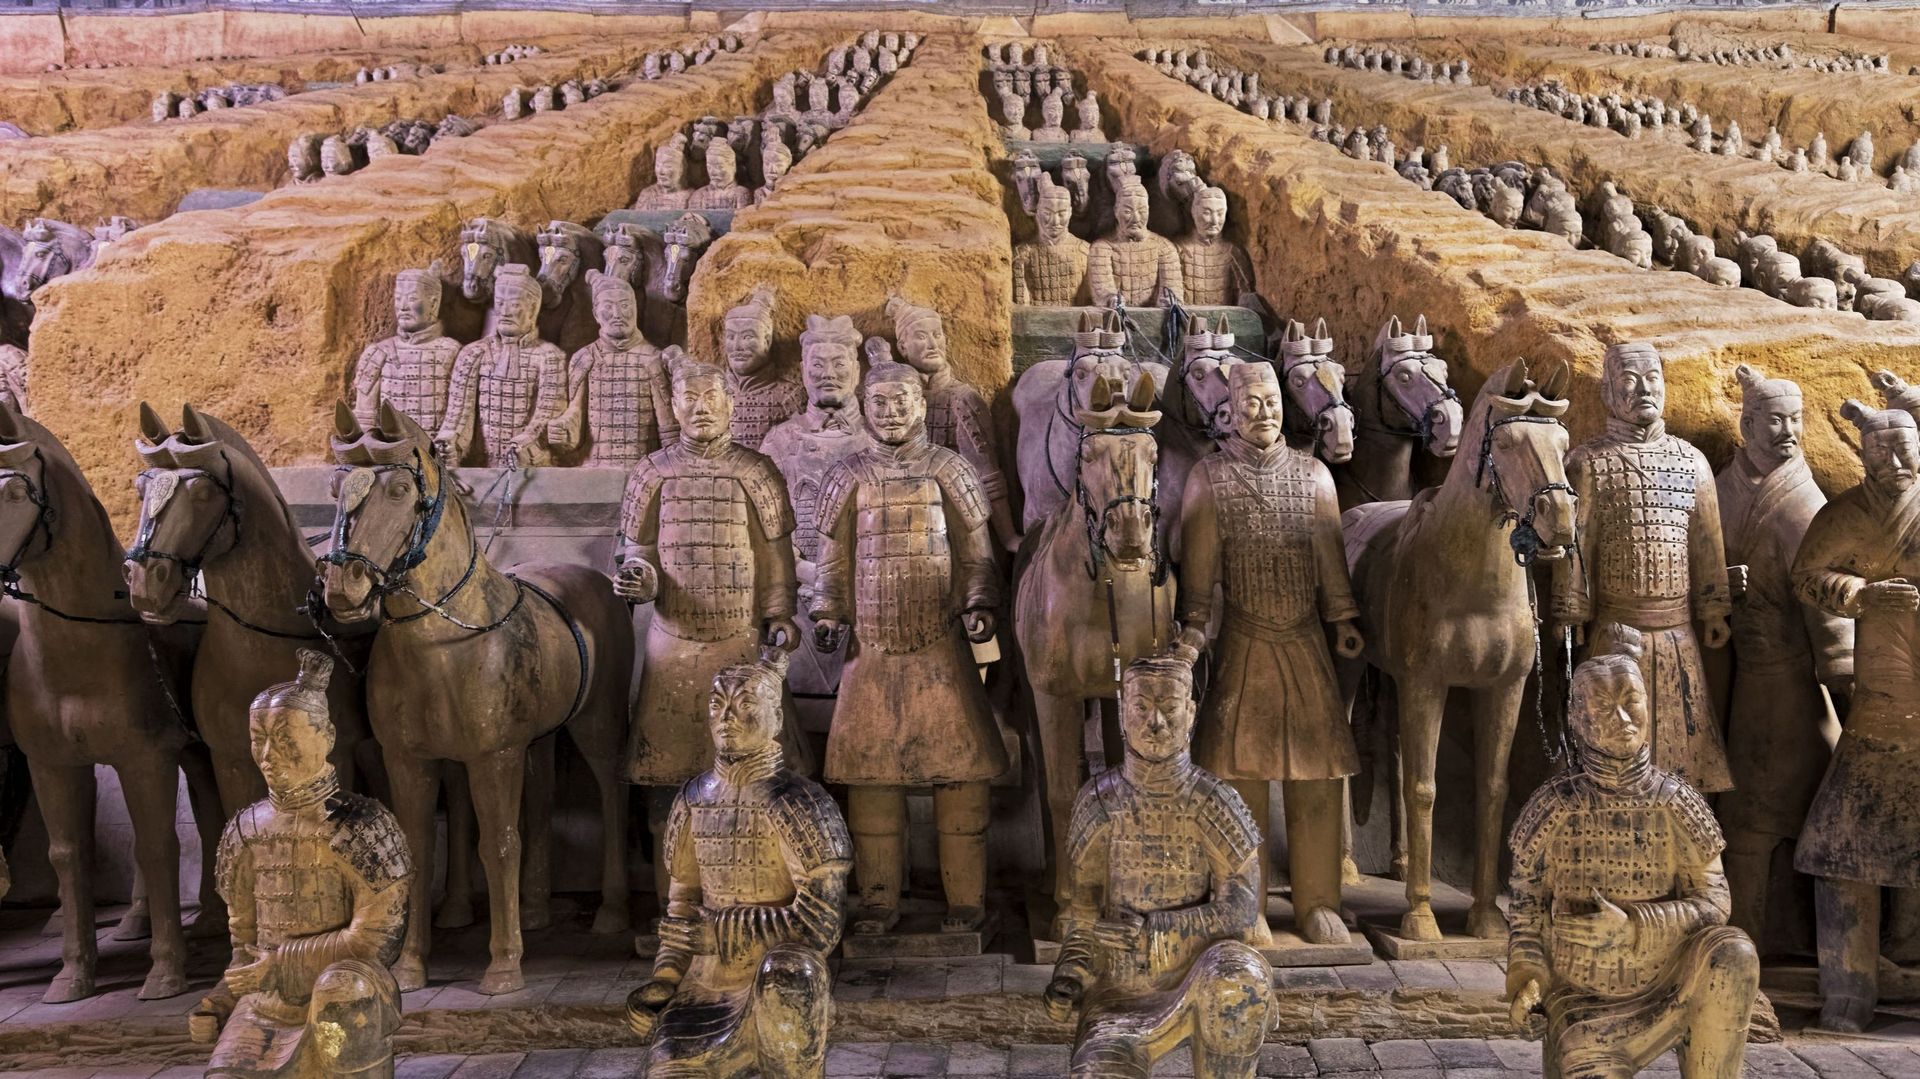 La grande armée de terre cuite de l’empereur Qin Shi Huang.